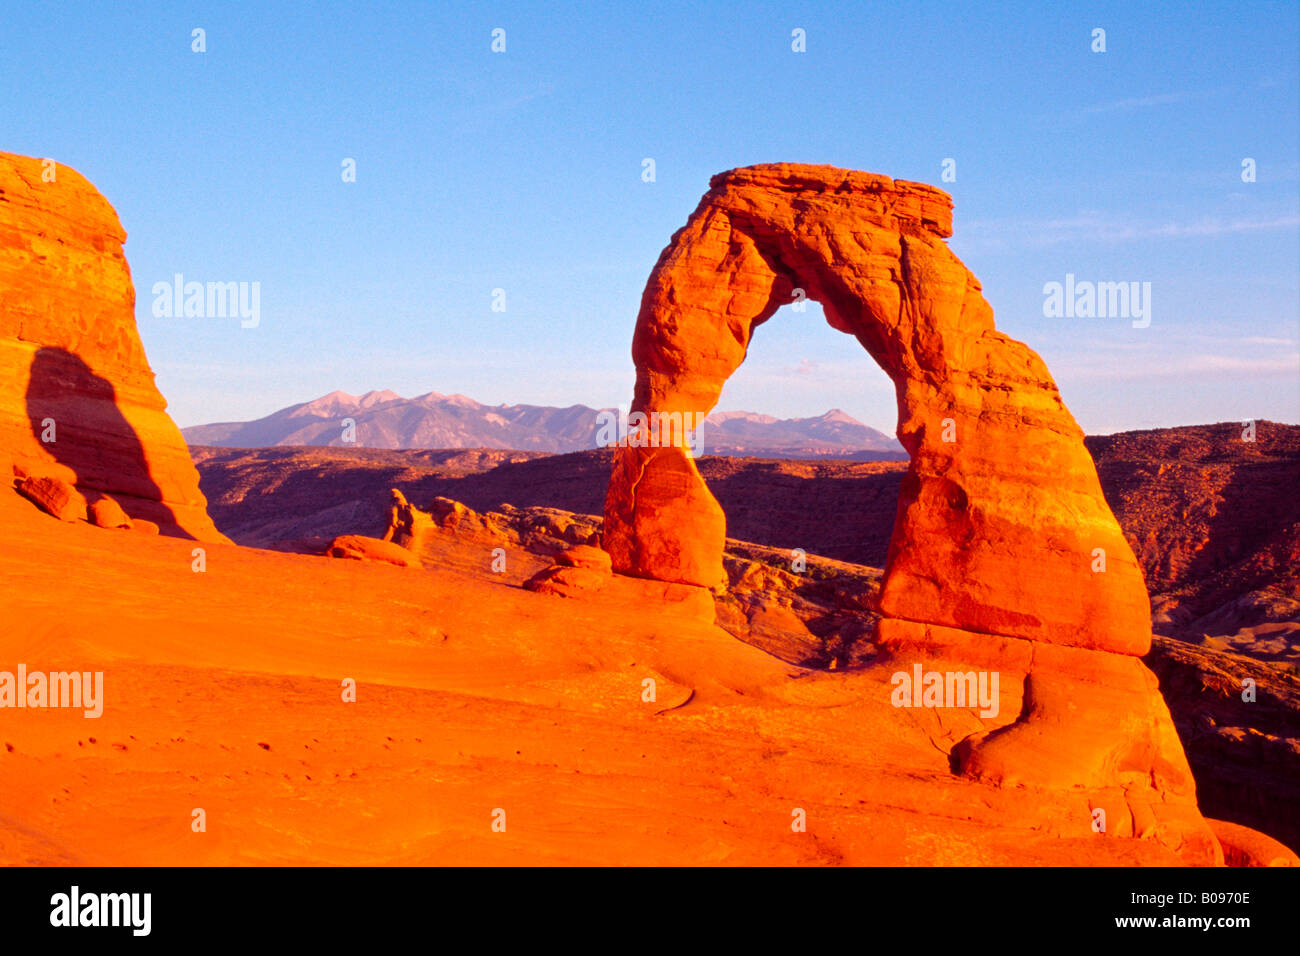 El arco delicado y el rango de La Sal, Parque Nacional Arches, en Utah, EE.UU. Foto de stock